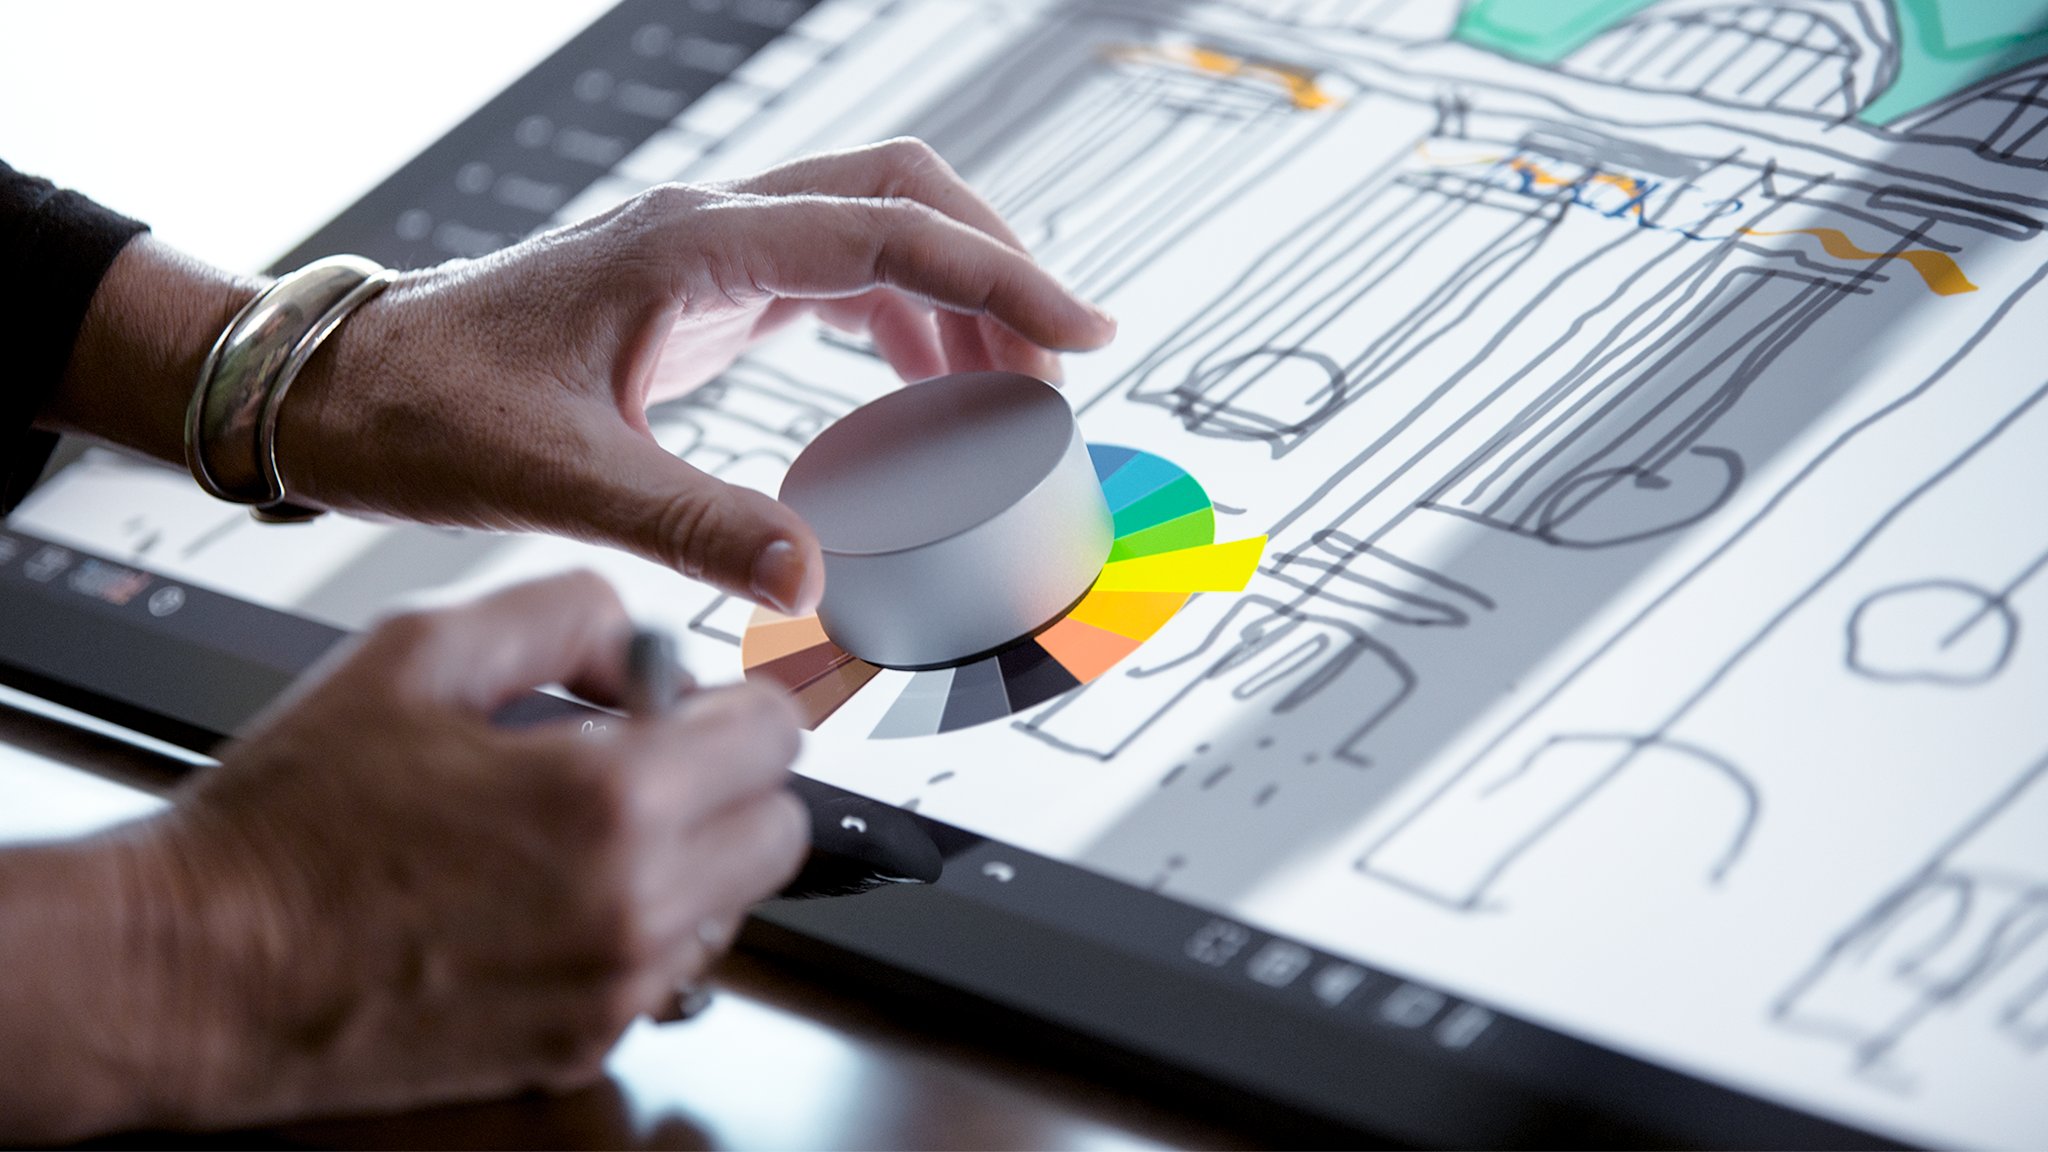 Le Surface Dial va offrir de nouveaux contrôles sur le Surface Studio